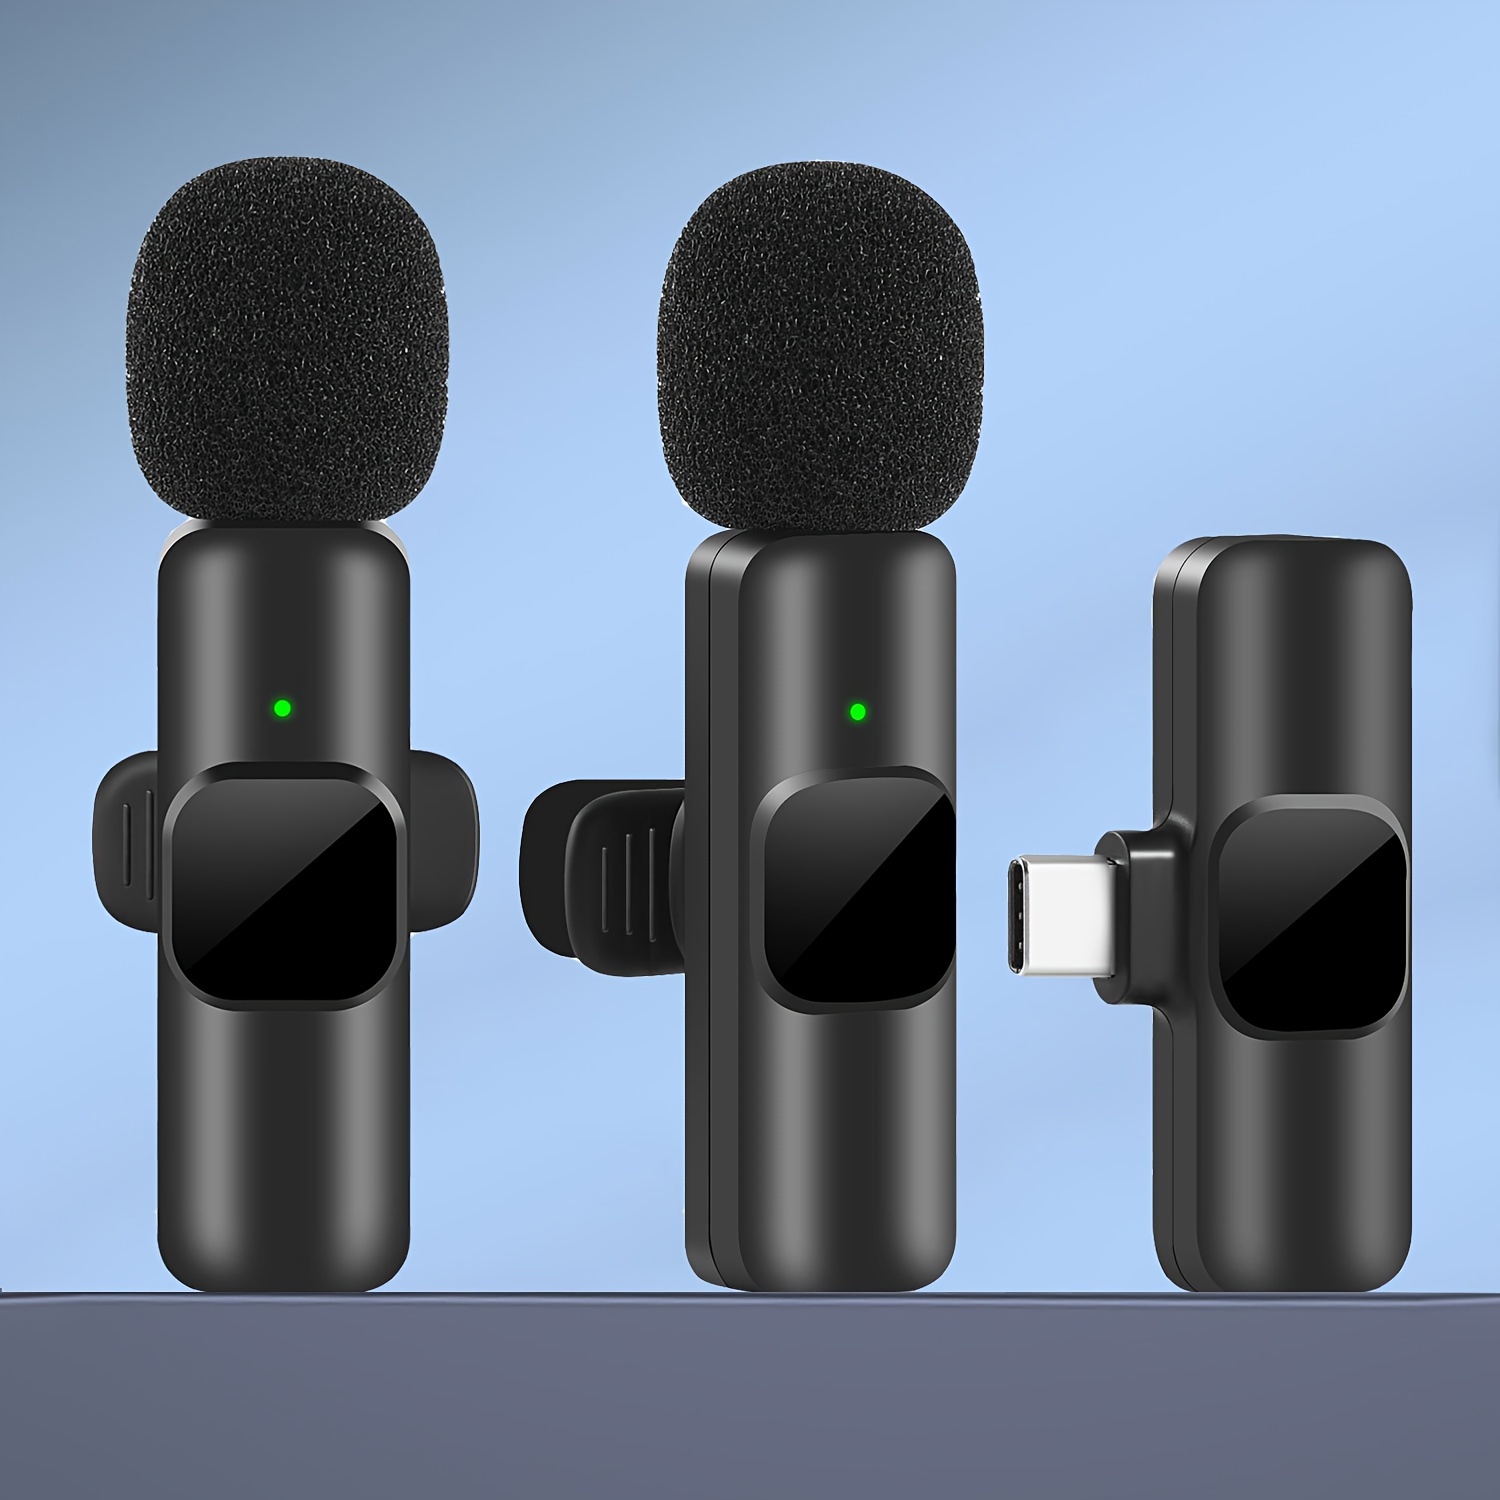 Mini Microphone - Livraison Gratuite Pour Les Nouveaux